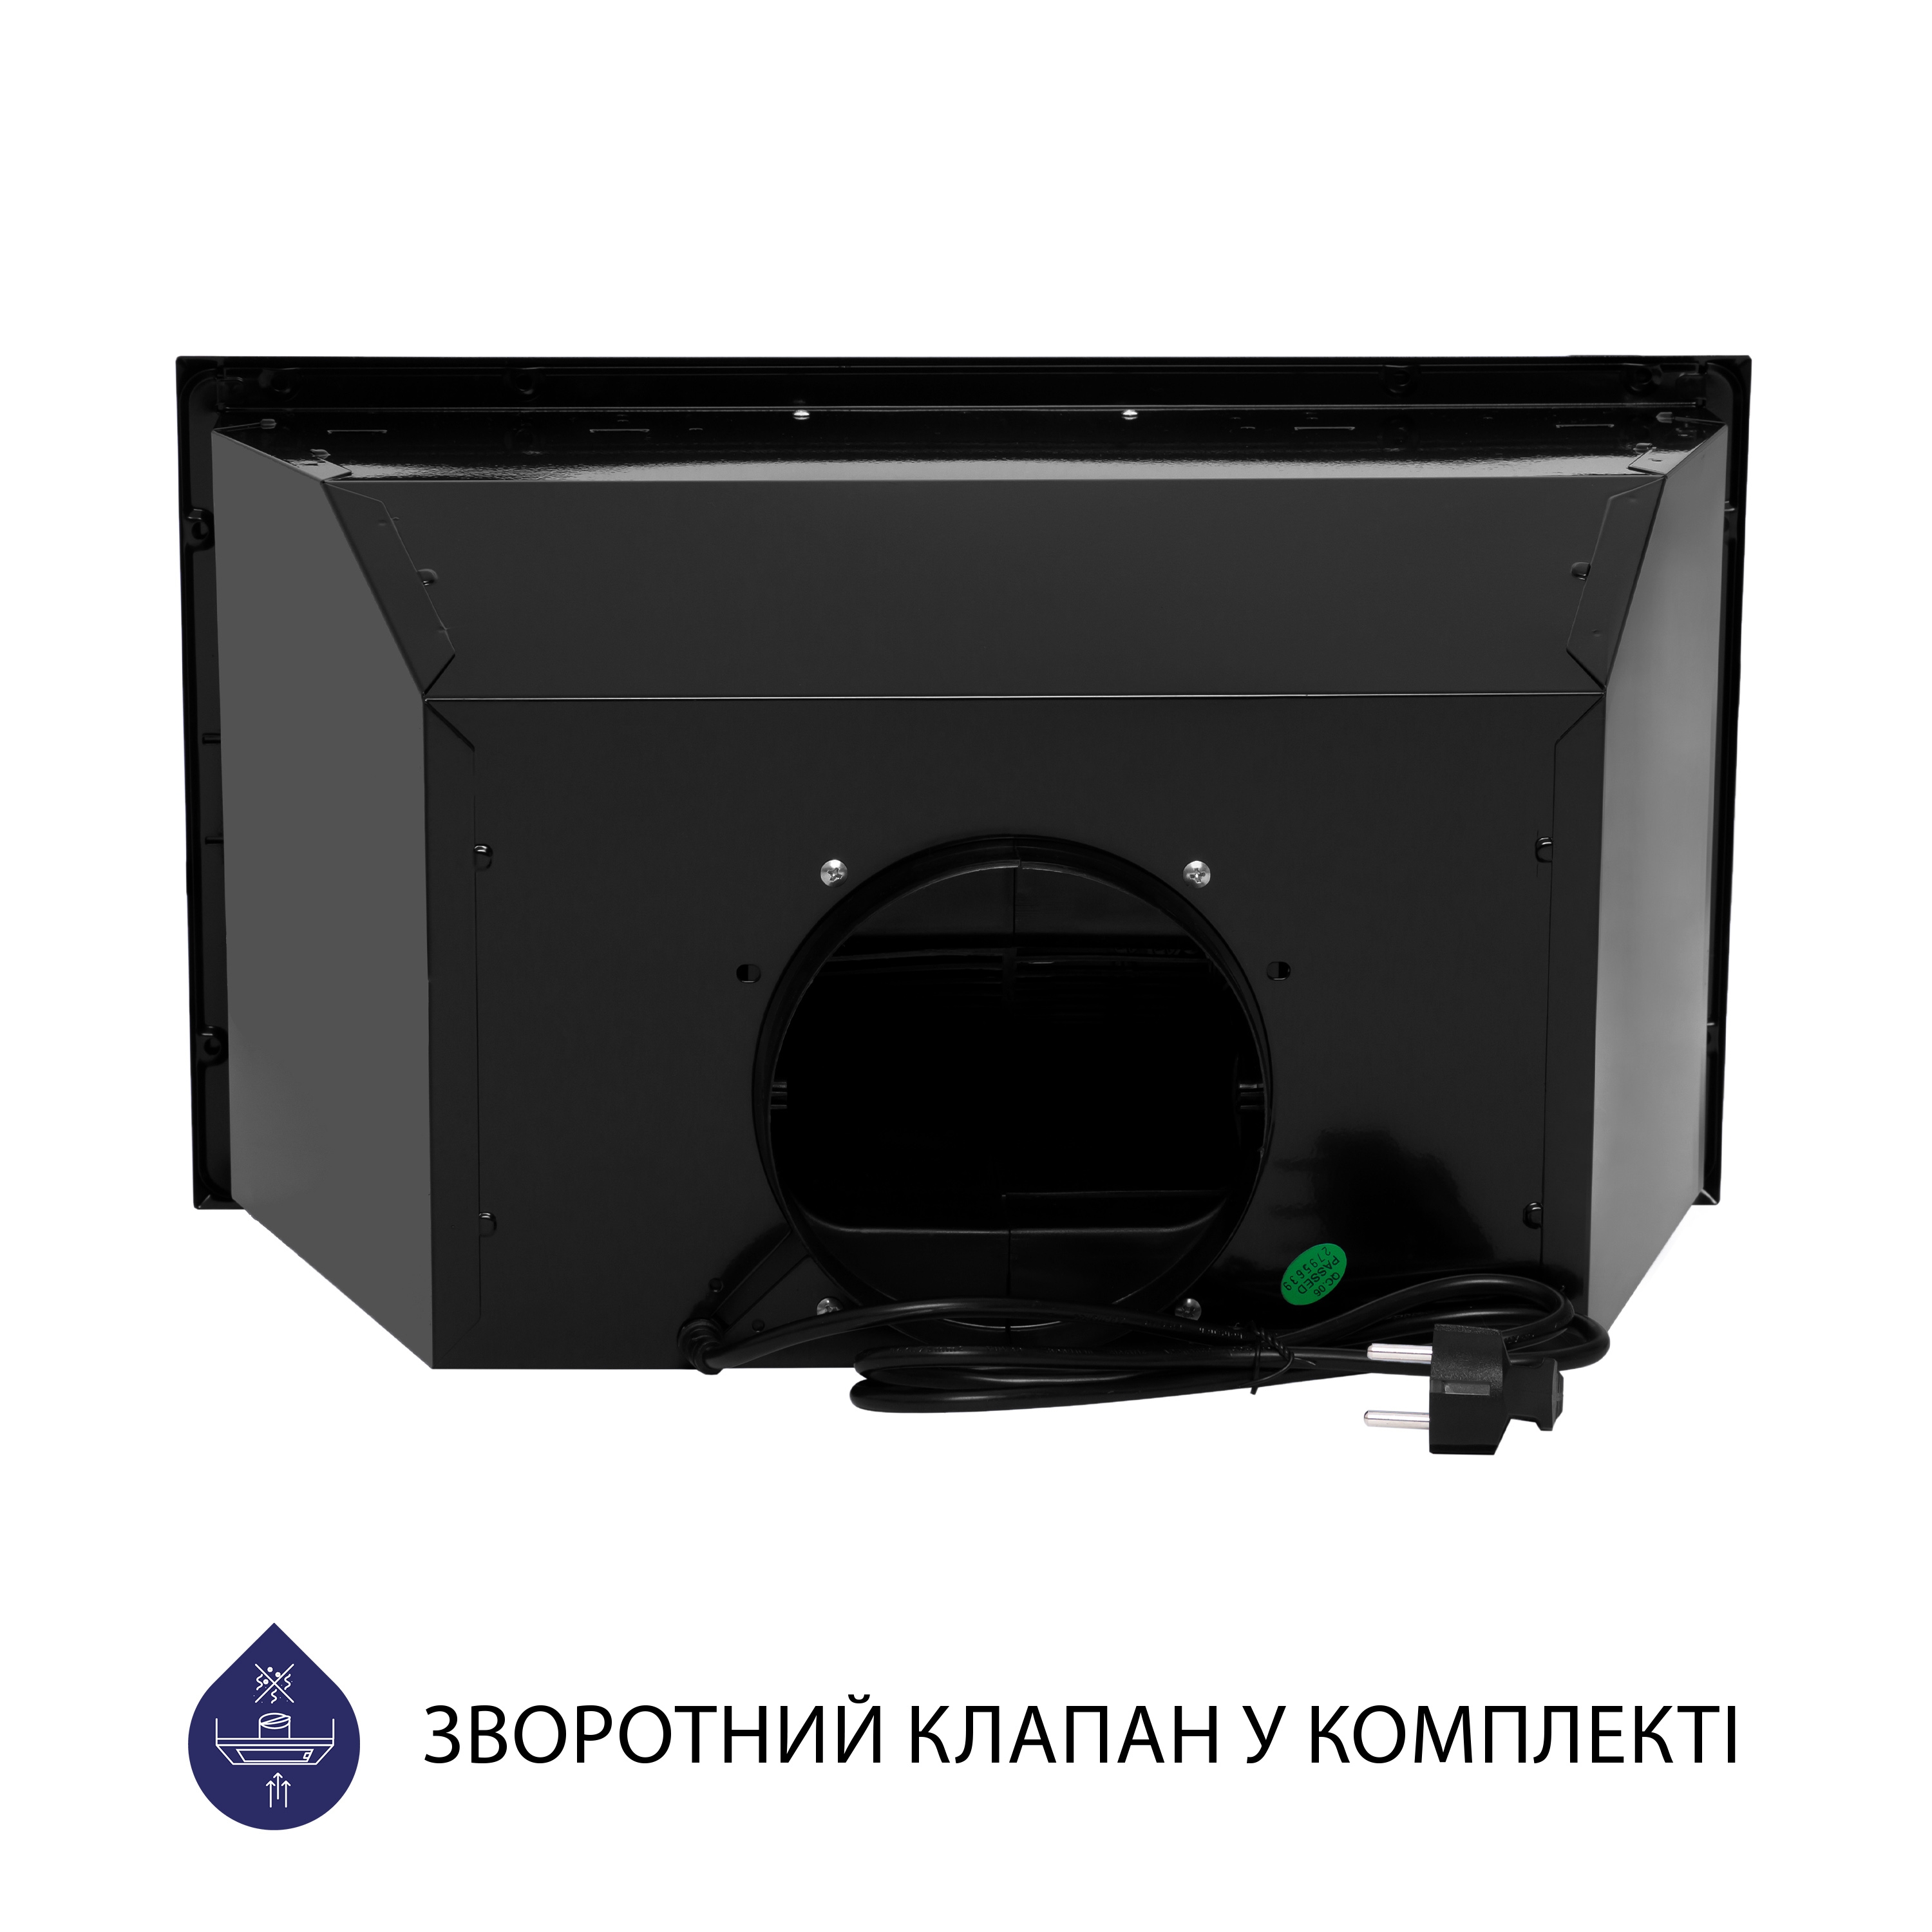 Витяжка кухонная полновстраиваемая Minola HBI 5222 BLF 700 LED характеристики - фотография 7